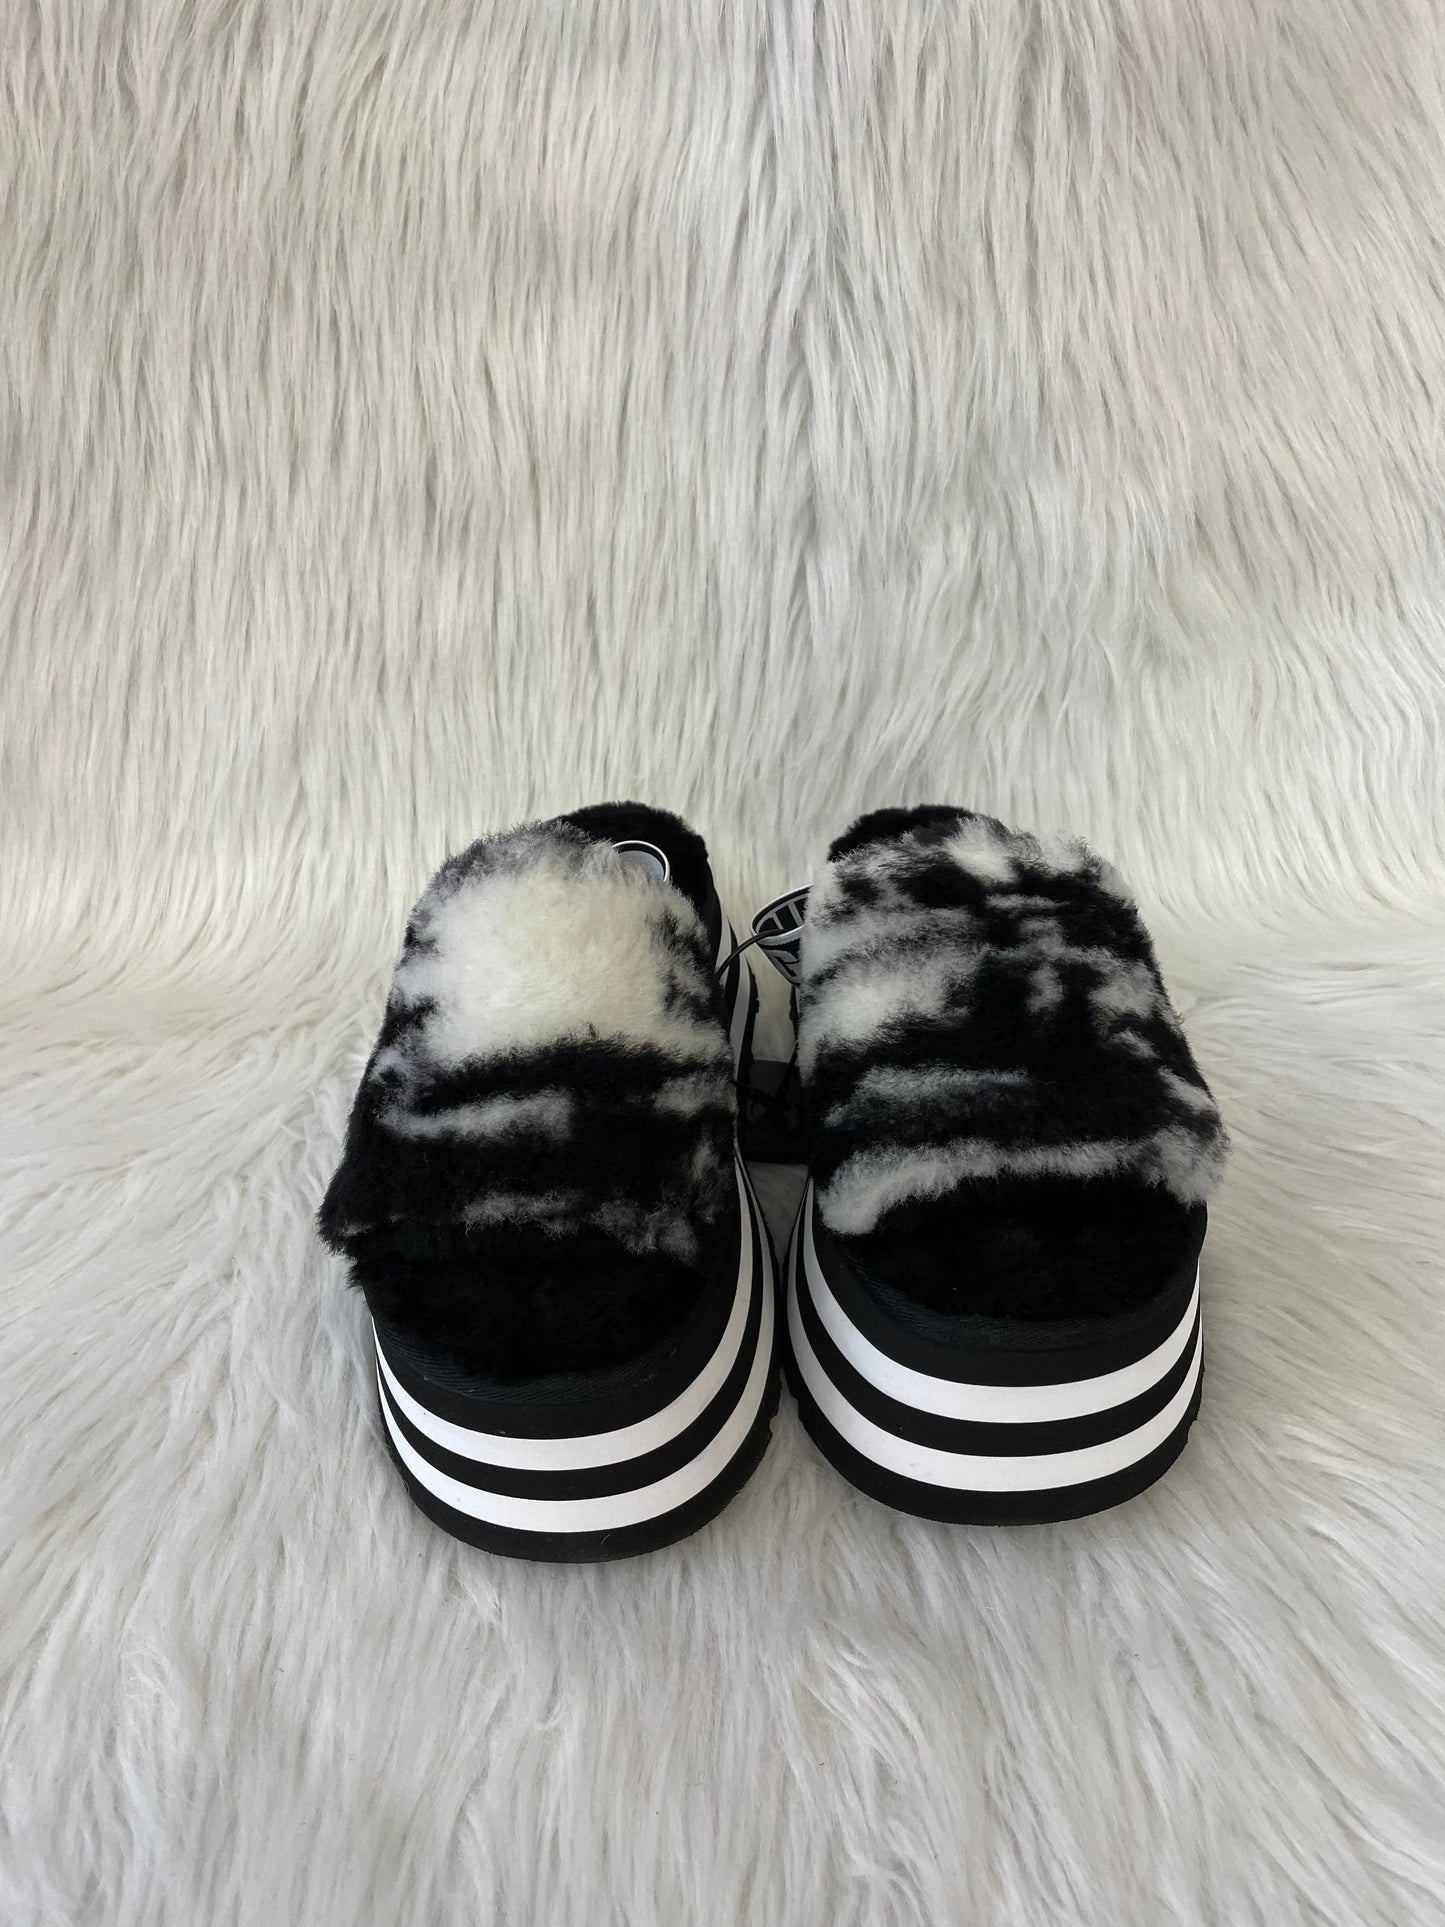 Black & White Sandals Designer Ugg, Size 6